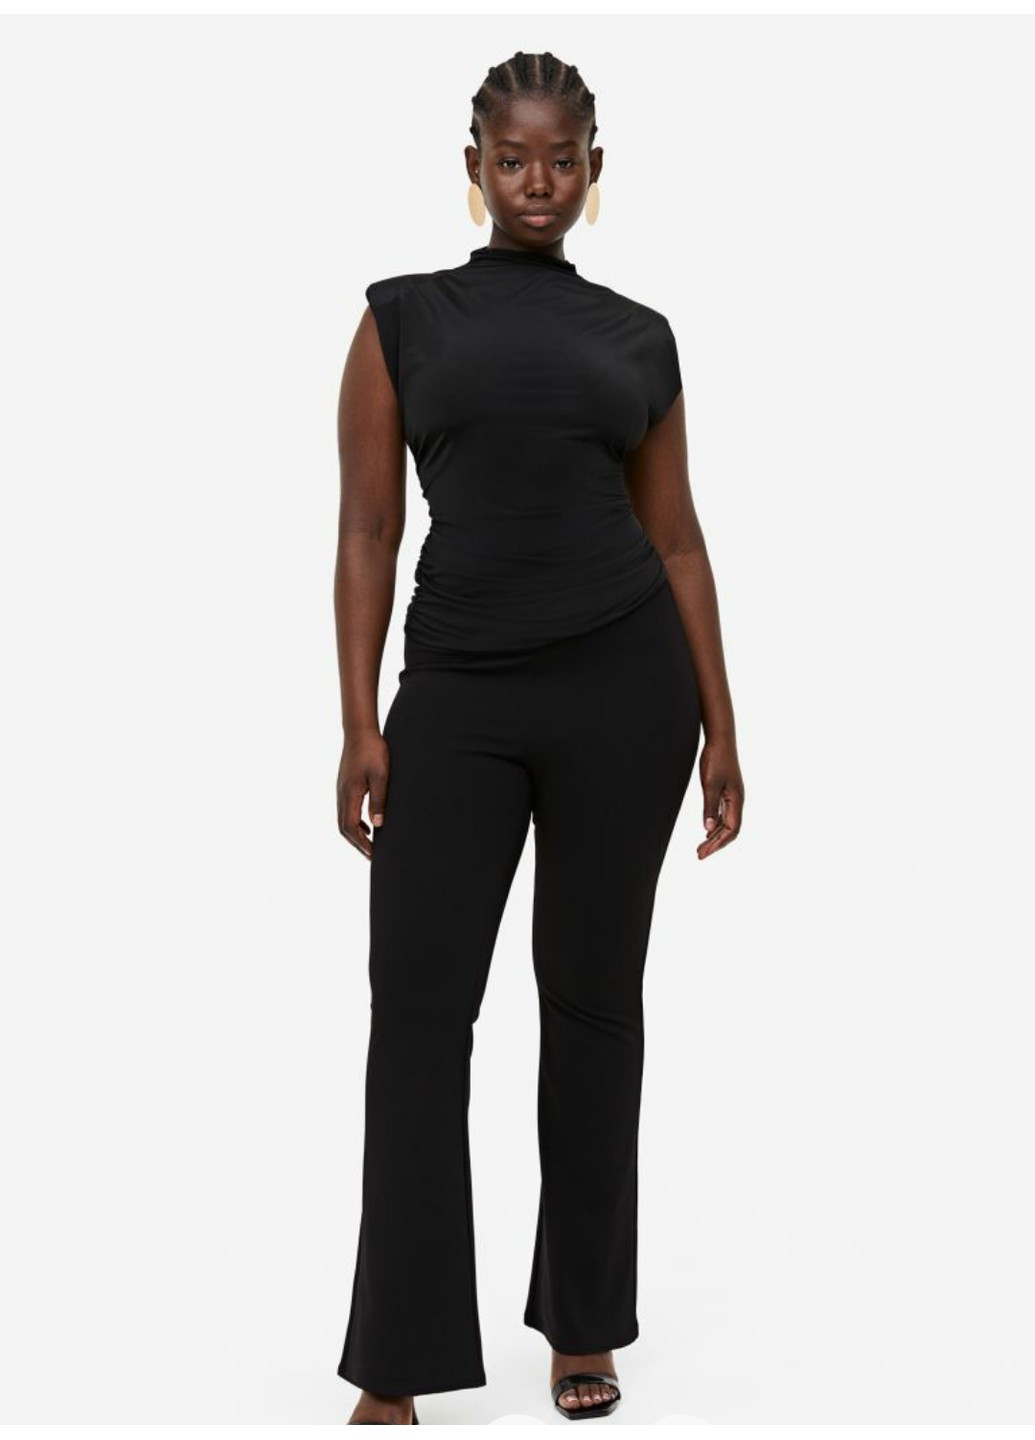 Черные демисезонные женские леггинсы-клеш н&м (56213) xs черные H&M